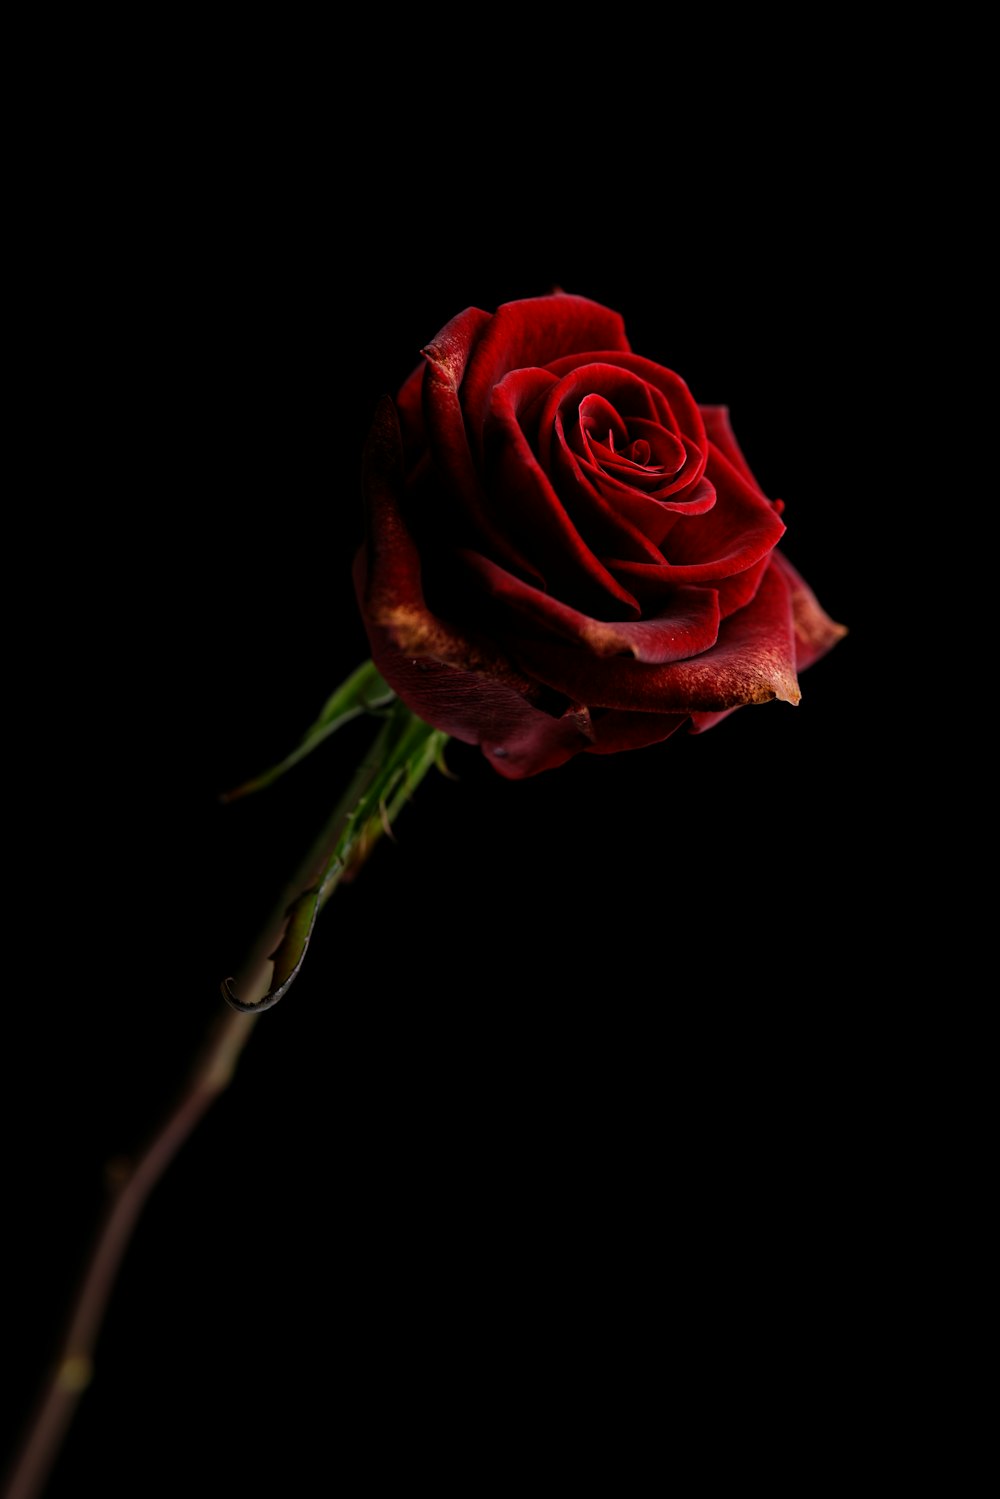 Rosa rossa su sfondo nero foto – Fiore Immagine gratuita su Unsplash